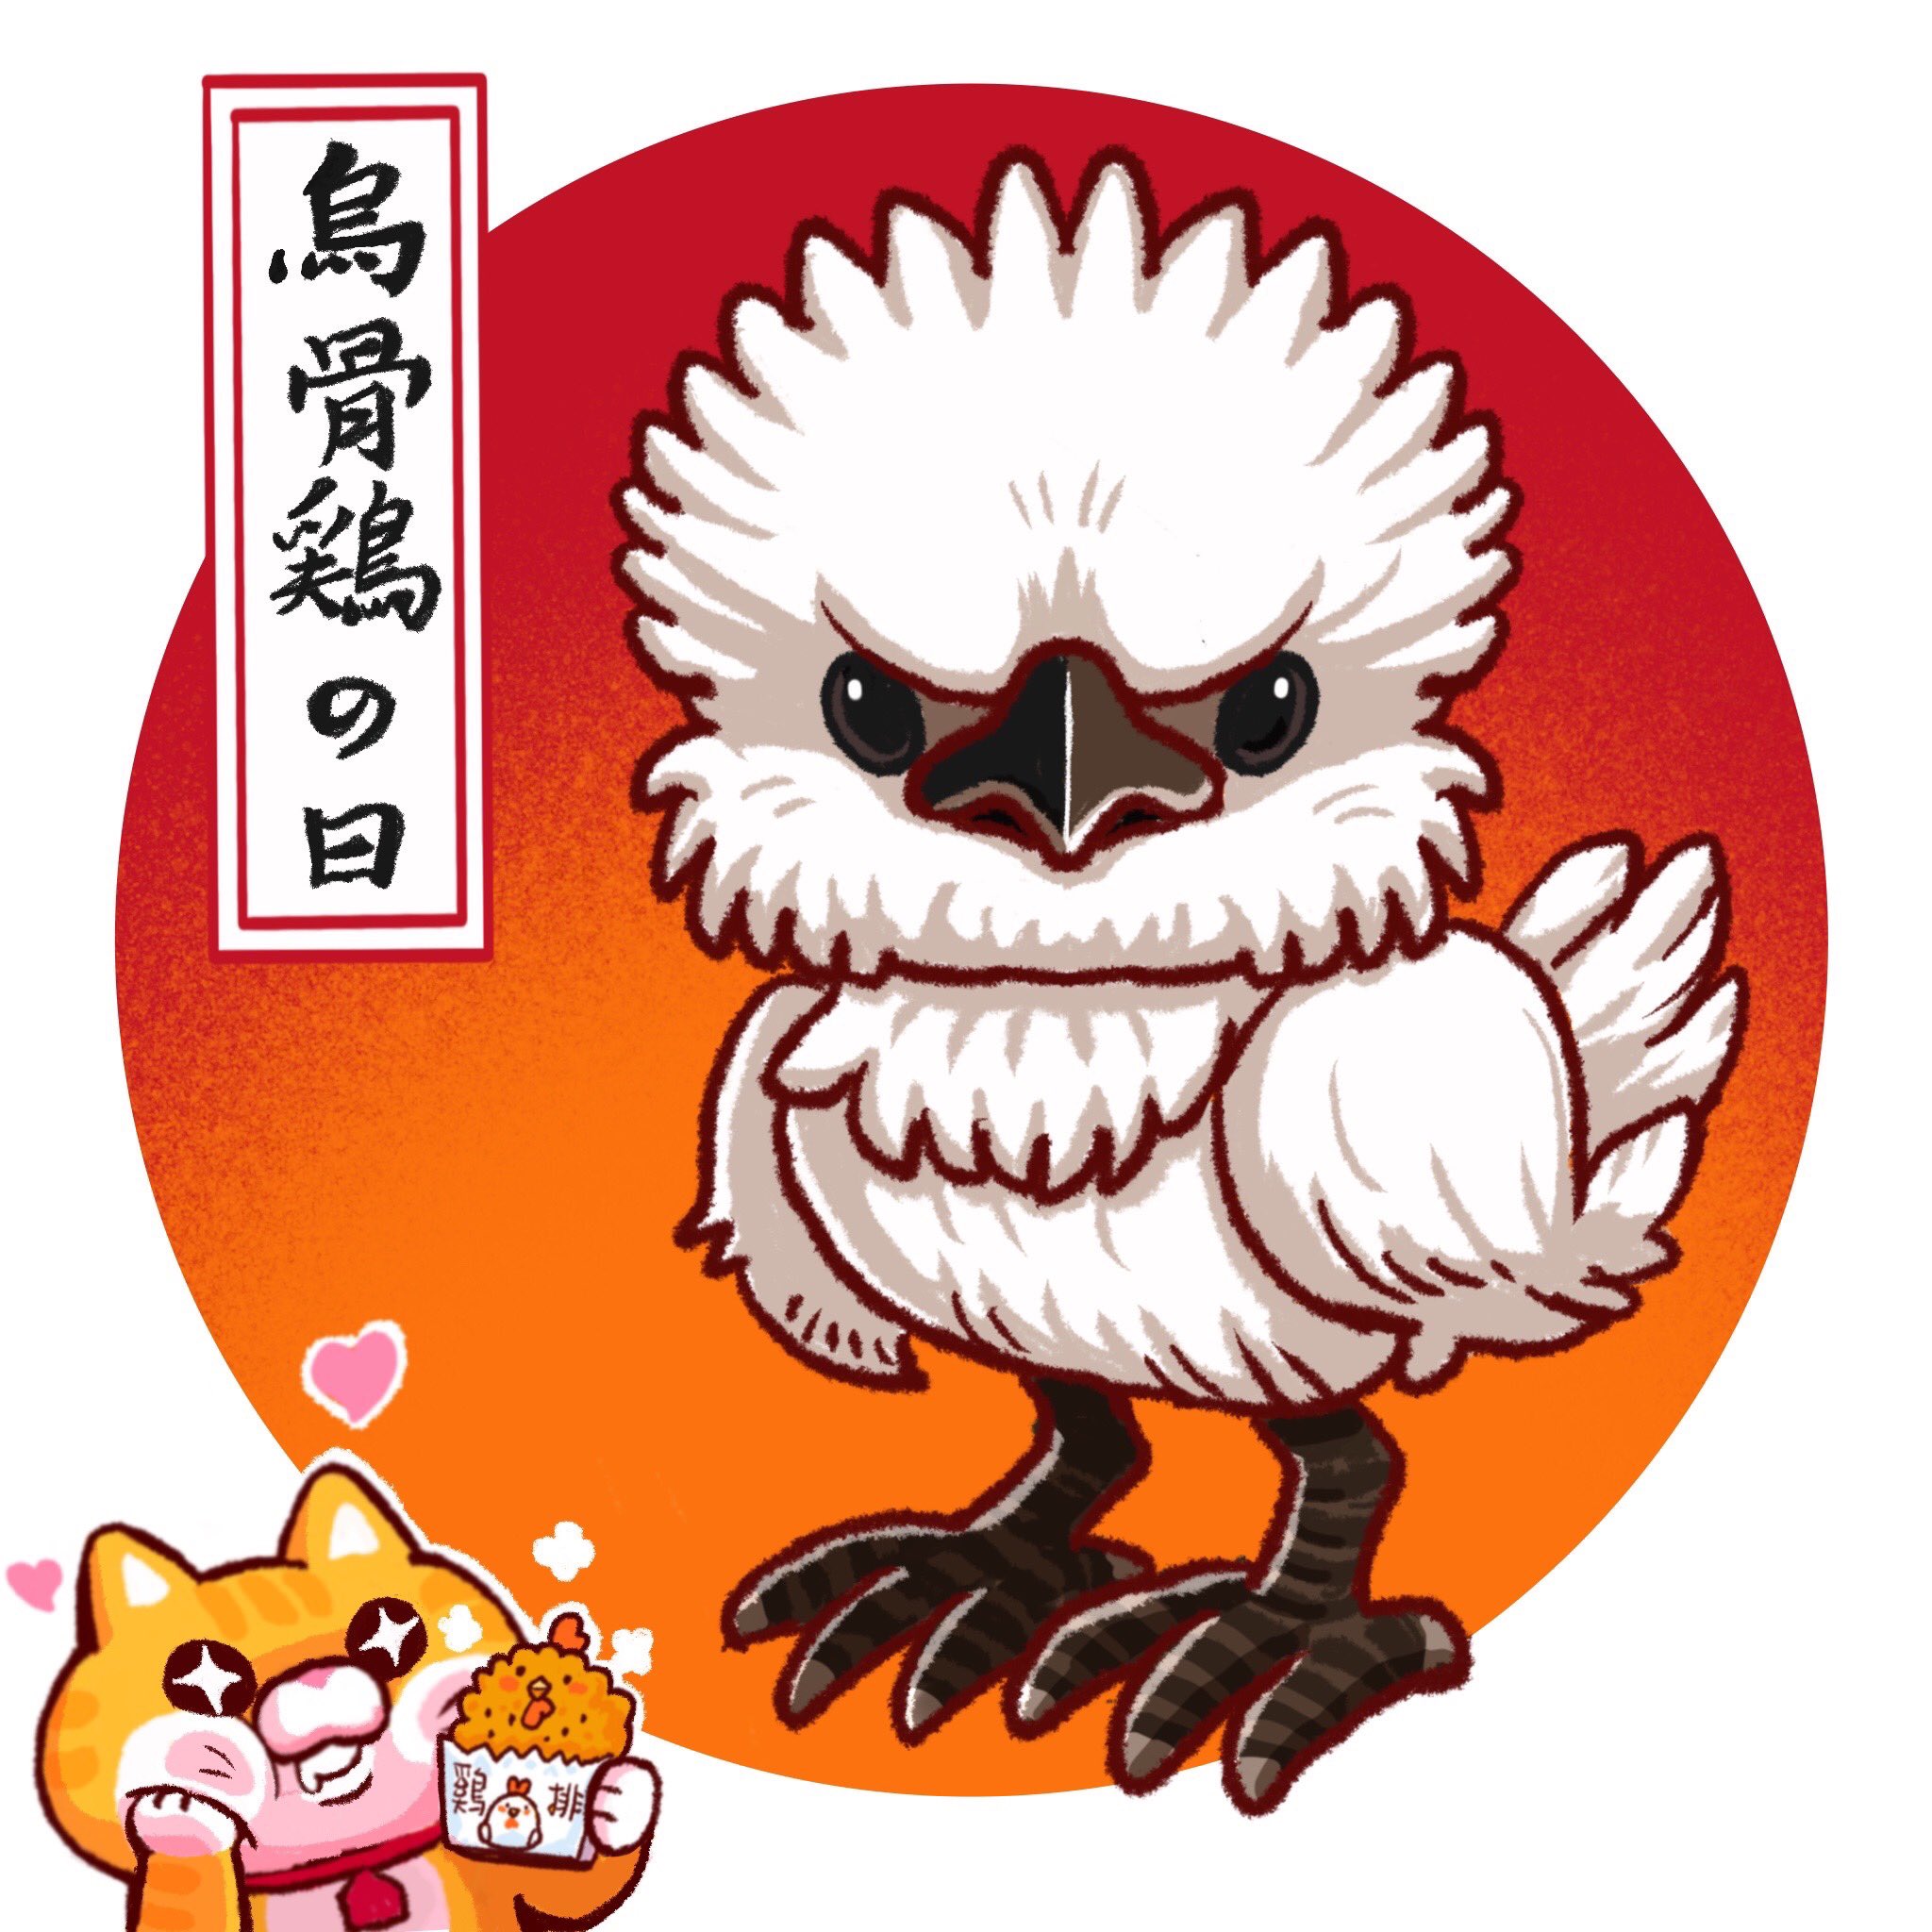 Nekoshouchu 7月21日は 烏骨鶏の日 薬膳料理の王様と呼ばれているのね かっこういい 台湾夜市でも薬膳料理が売られているよ あなたは食べたことあるのかな 猫 台湾好き 絵日記 台湾 ゆるキャラ キャラクター イラスト 食べキャラ グルメ